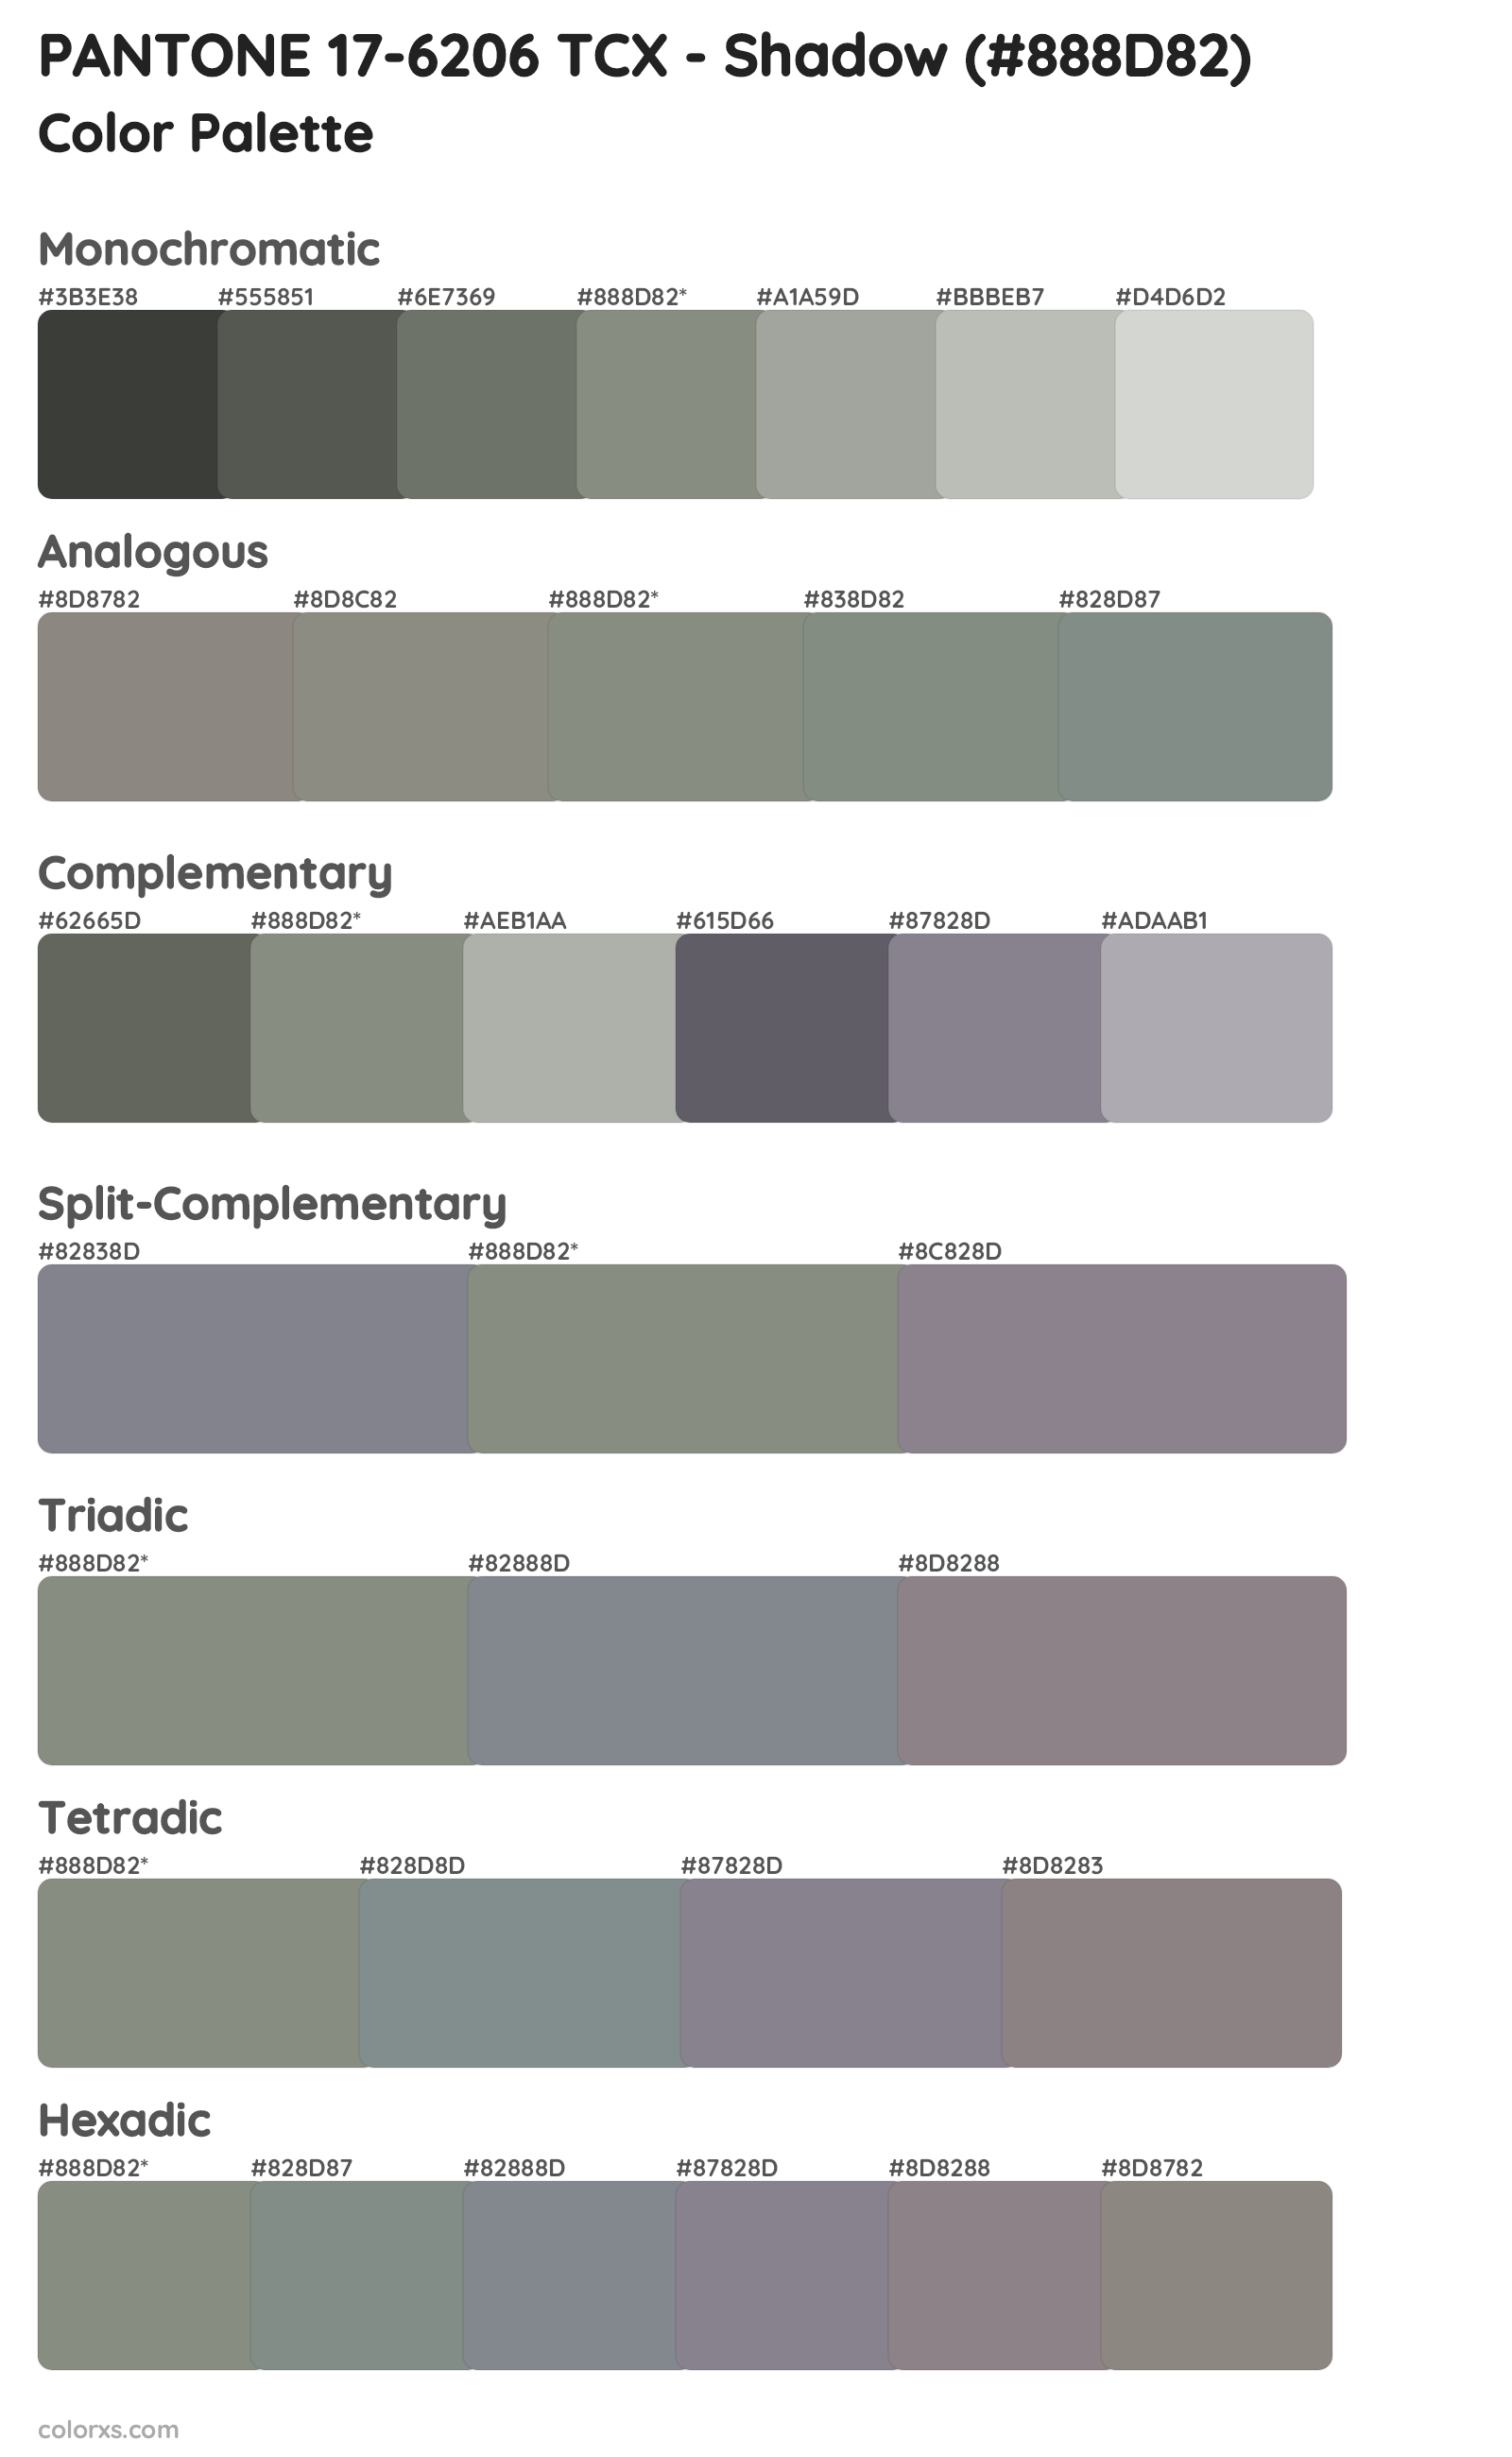 PANTONE 17-6206 TCX - Shadow Color Scheme Palettes